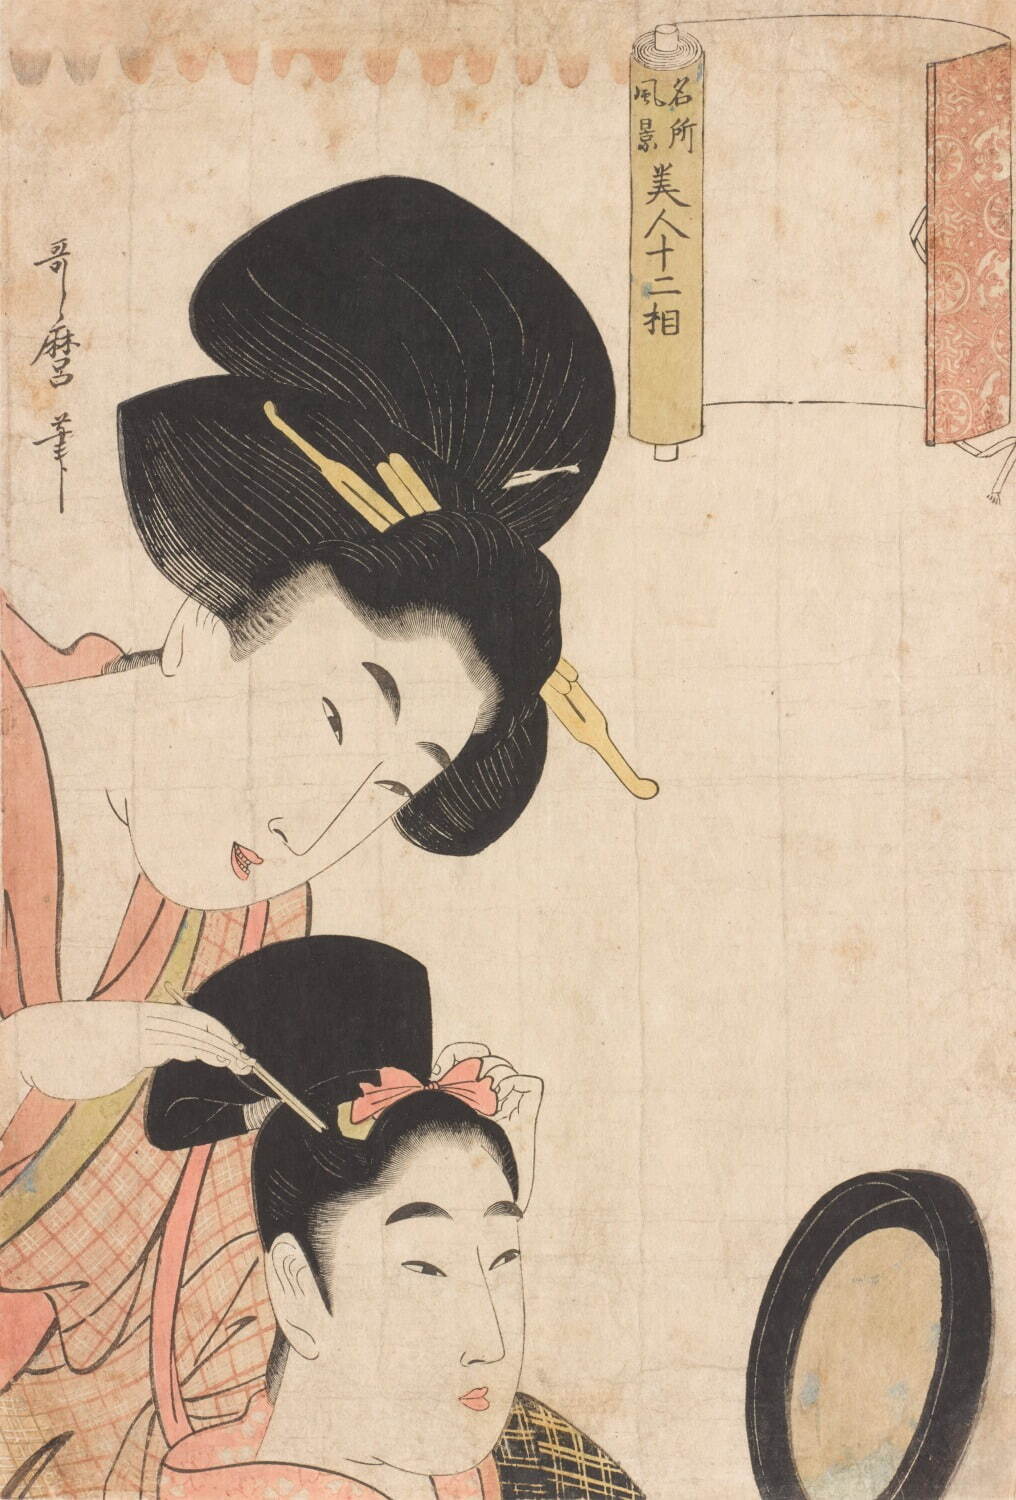 初代喜多川歌麿《名所風景美人十二相 結髪》大判錦絵 享和期(1801-03)頃